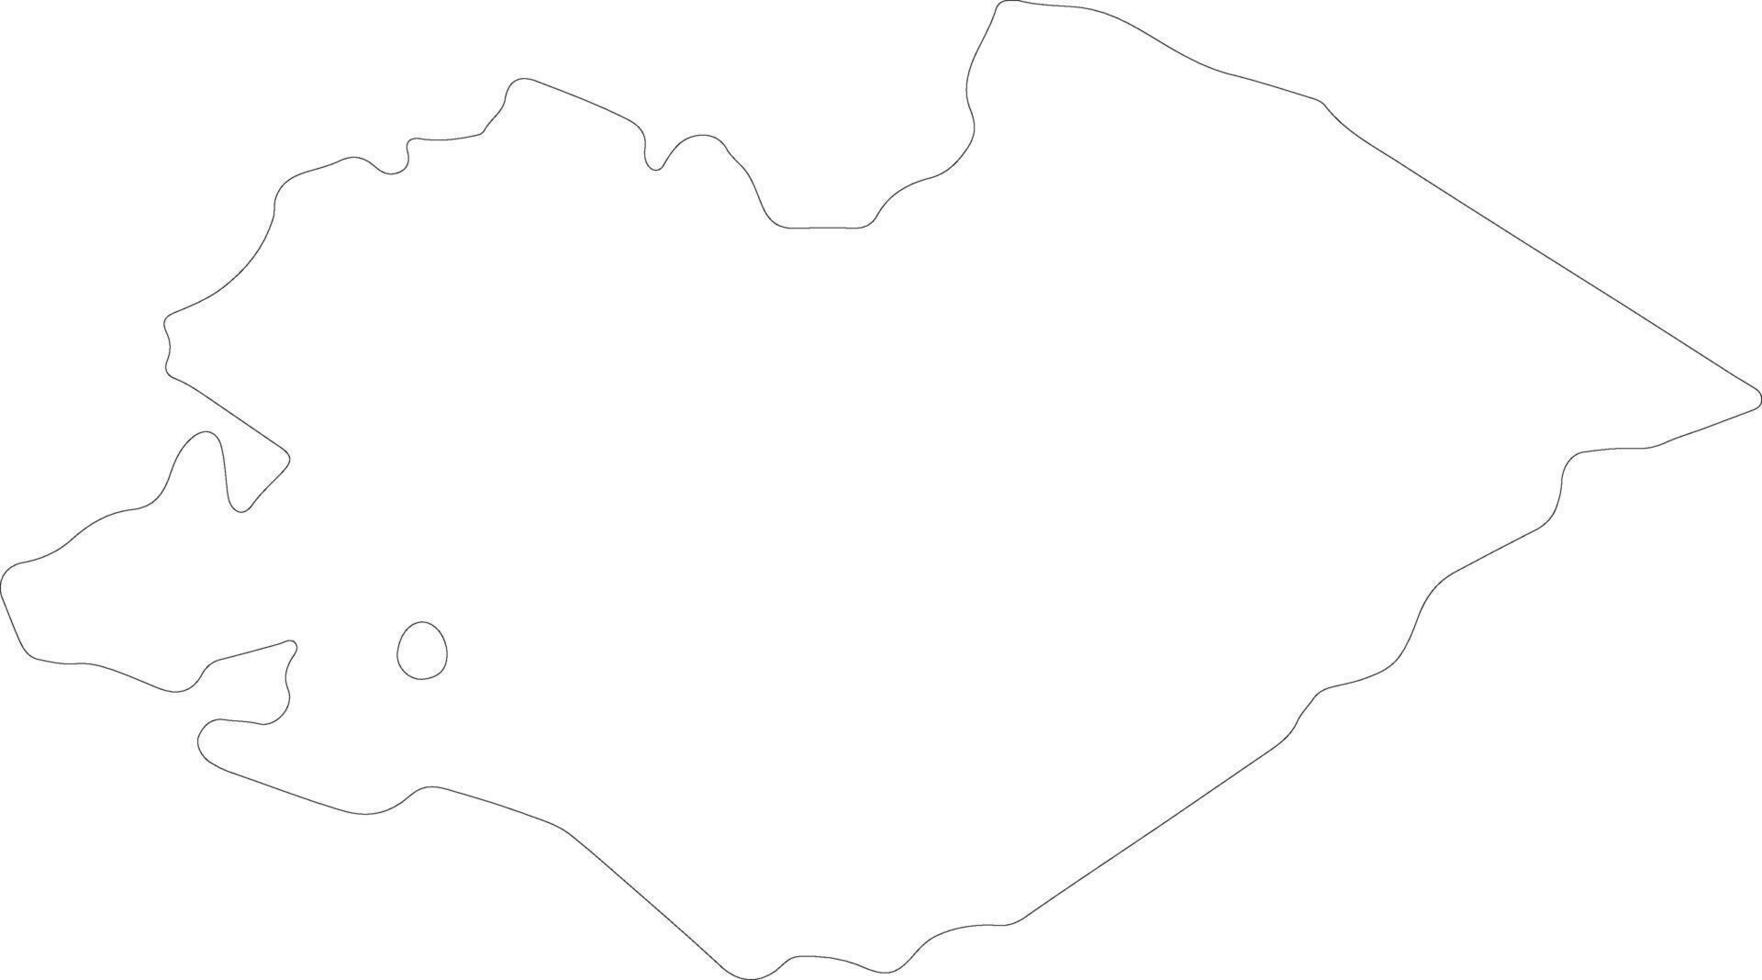 Pesaro e Urbino Italy outline map vector